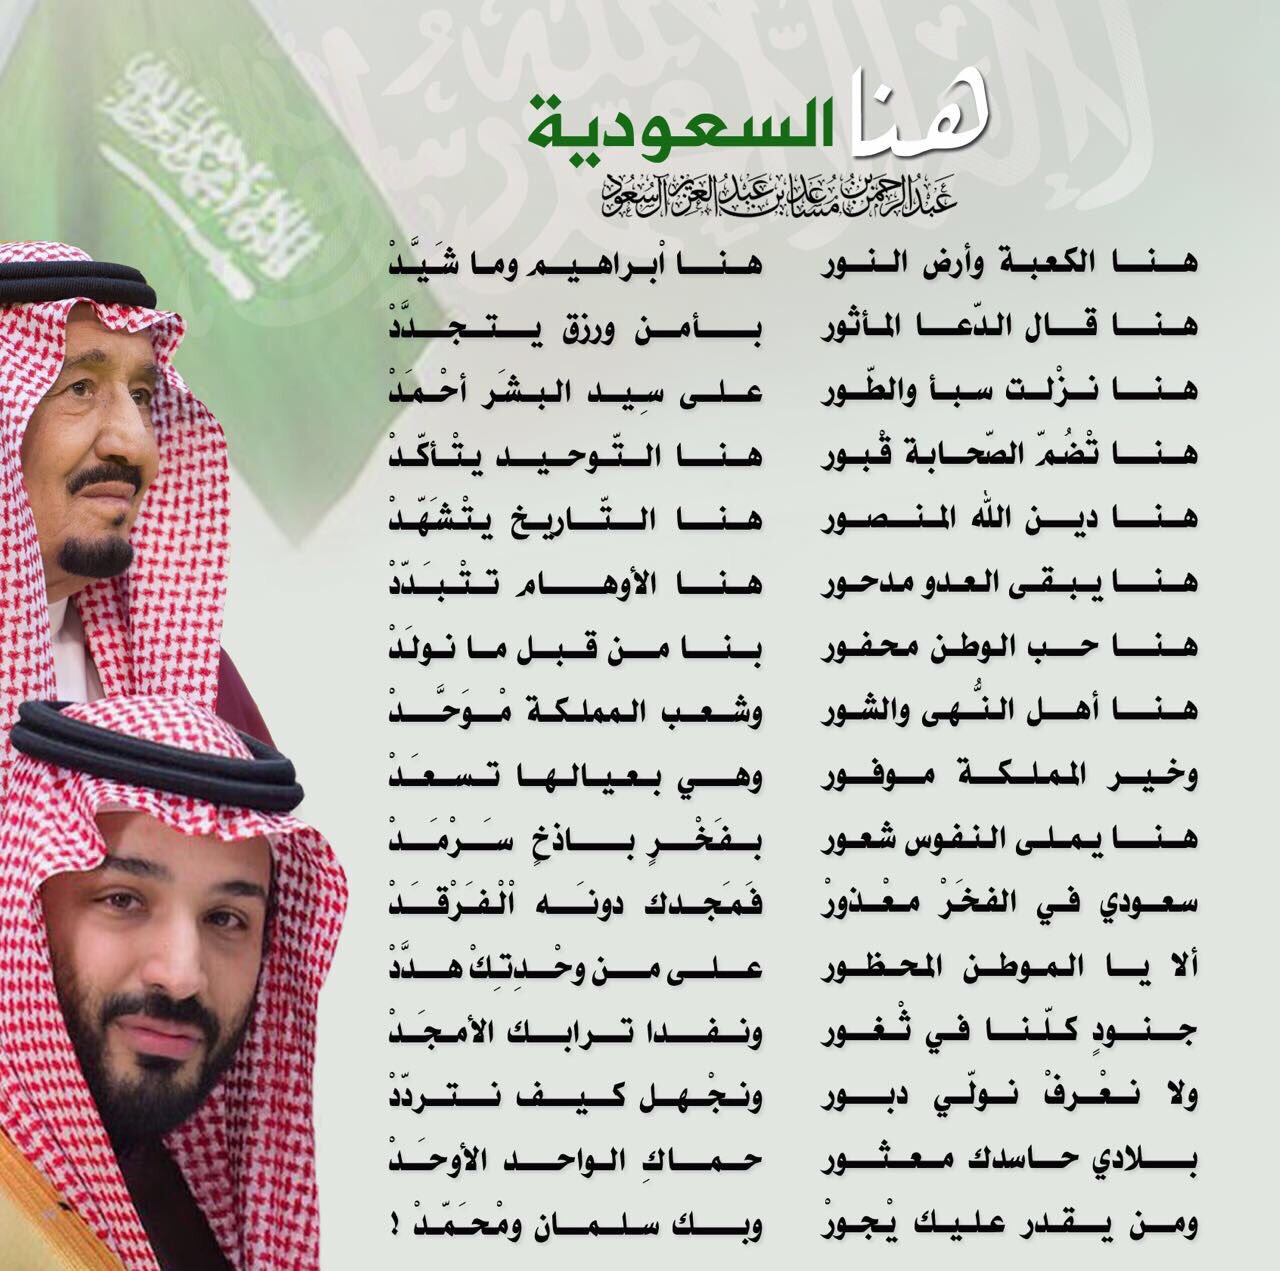 شعر قصير عن اليوم الوطني السعودي اشعار اليوم الوطني للمملكة العربية